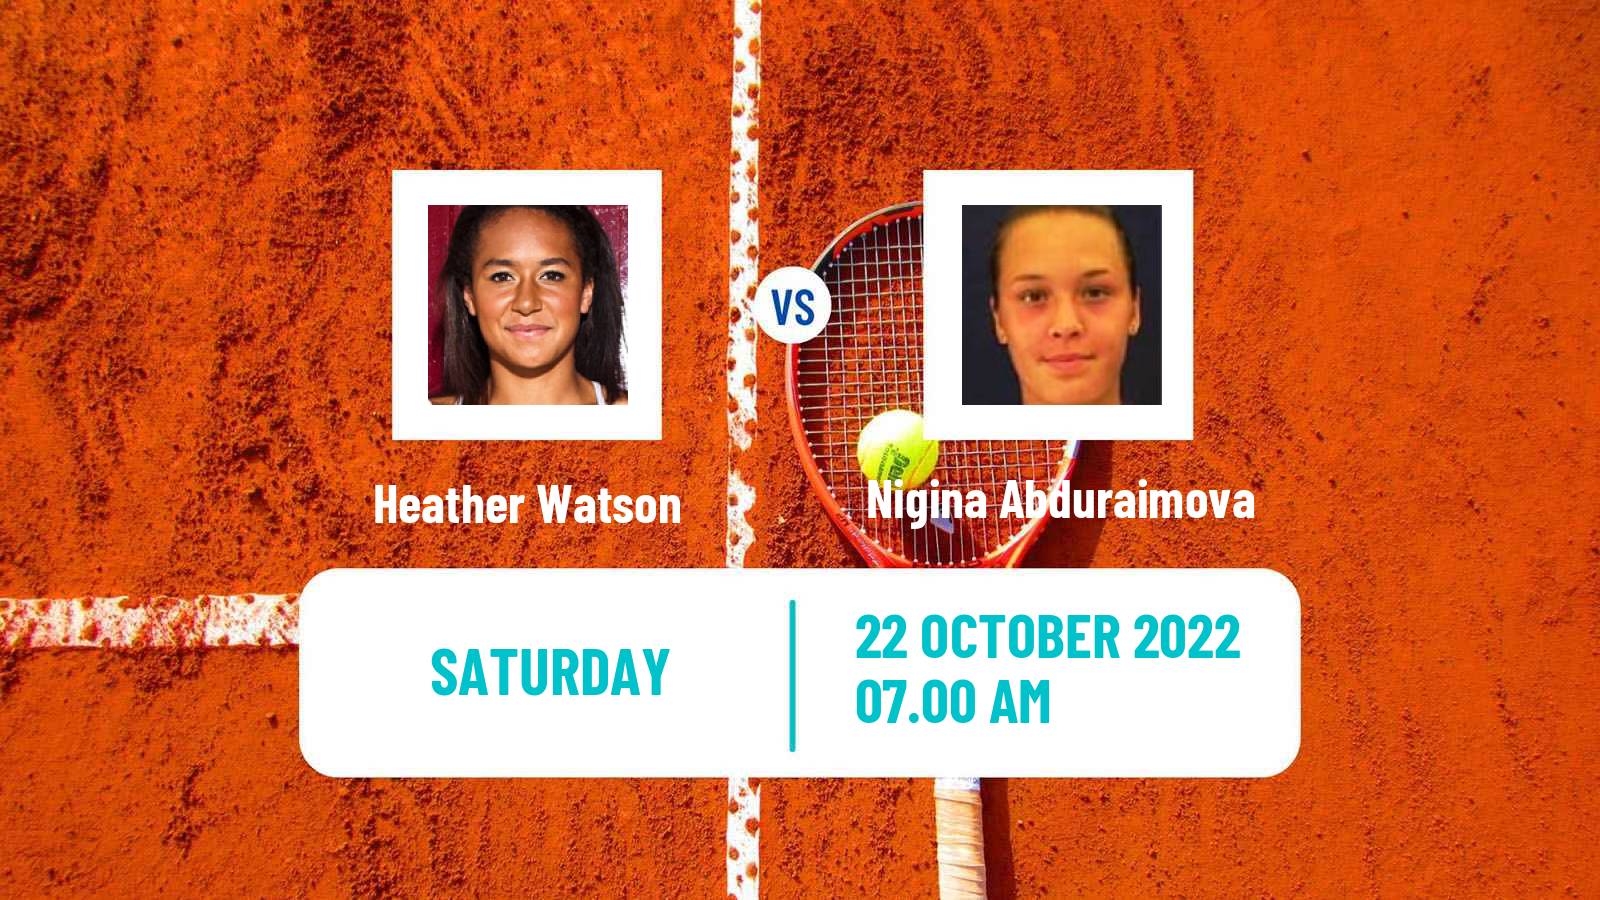 Tennis ITF Tournaments Heather Watson - Nigina Abduraimova